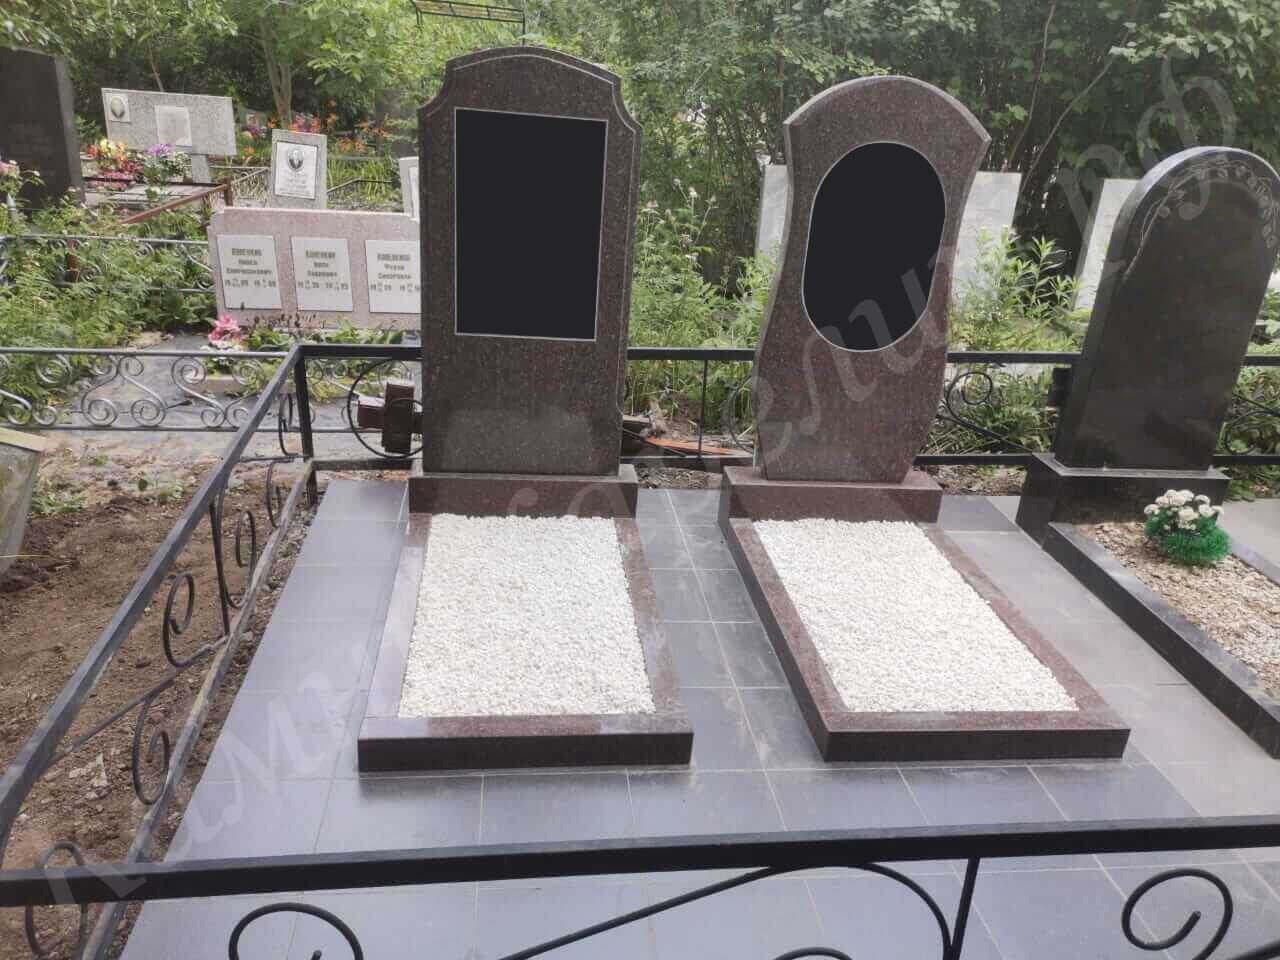 Данный групповой комплекс памятников состоит из пары надгробий из Ладожского гранита разной формы, а поверхность отделана мраморной плиткой. Это вариант для супружеского захоронения.